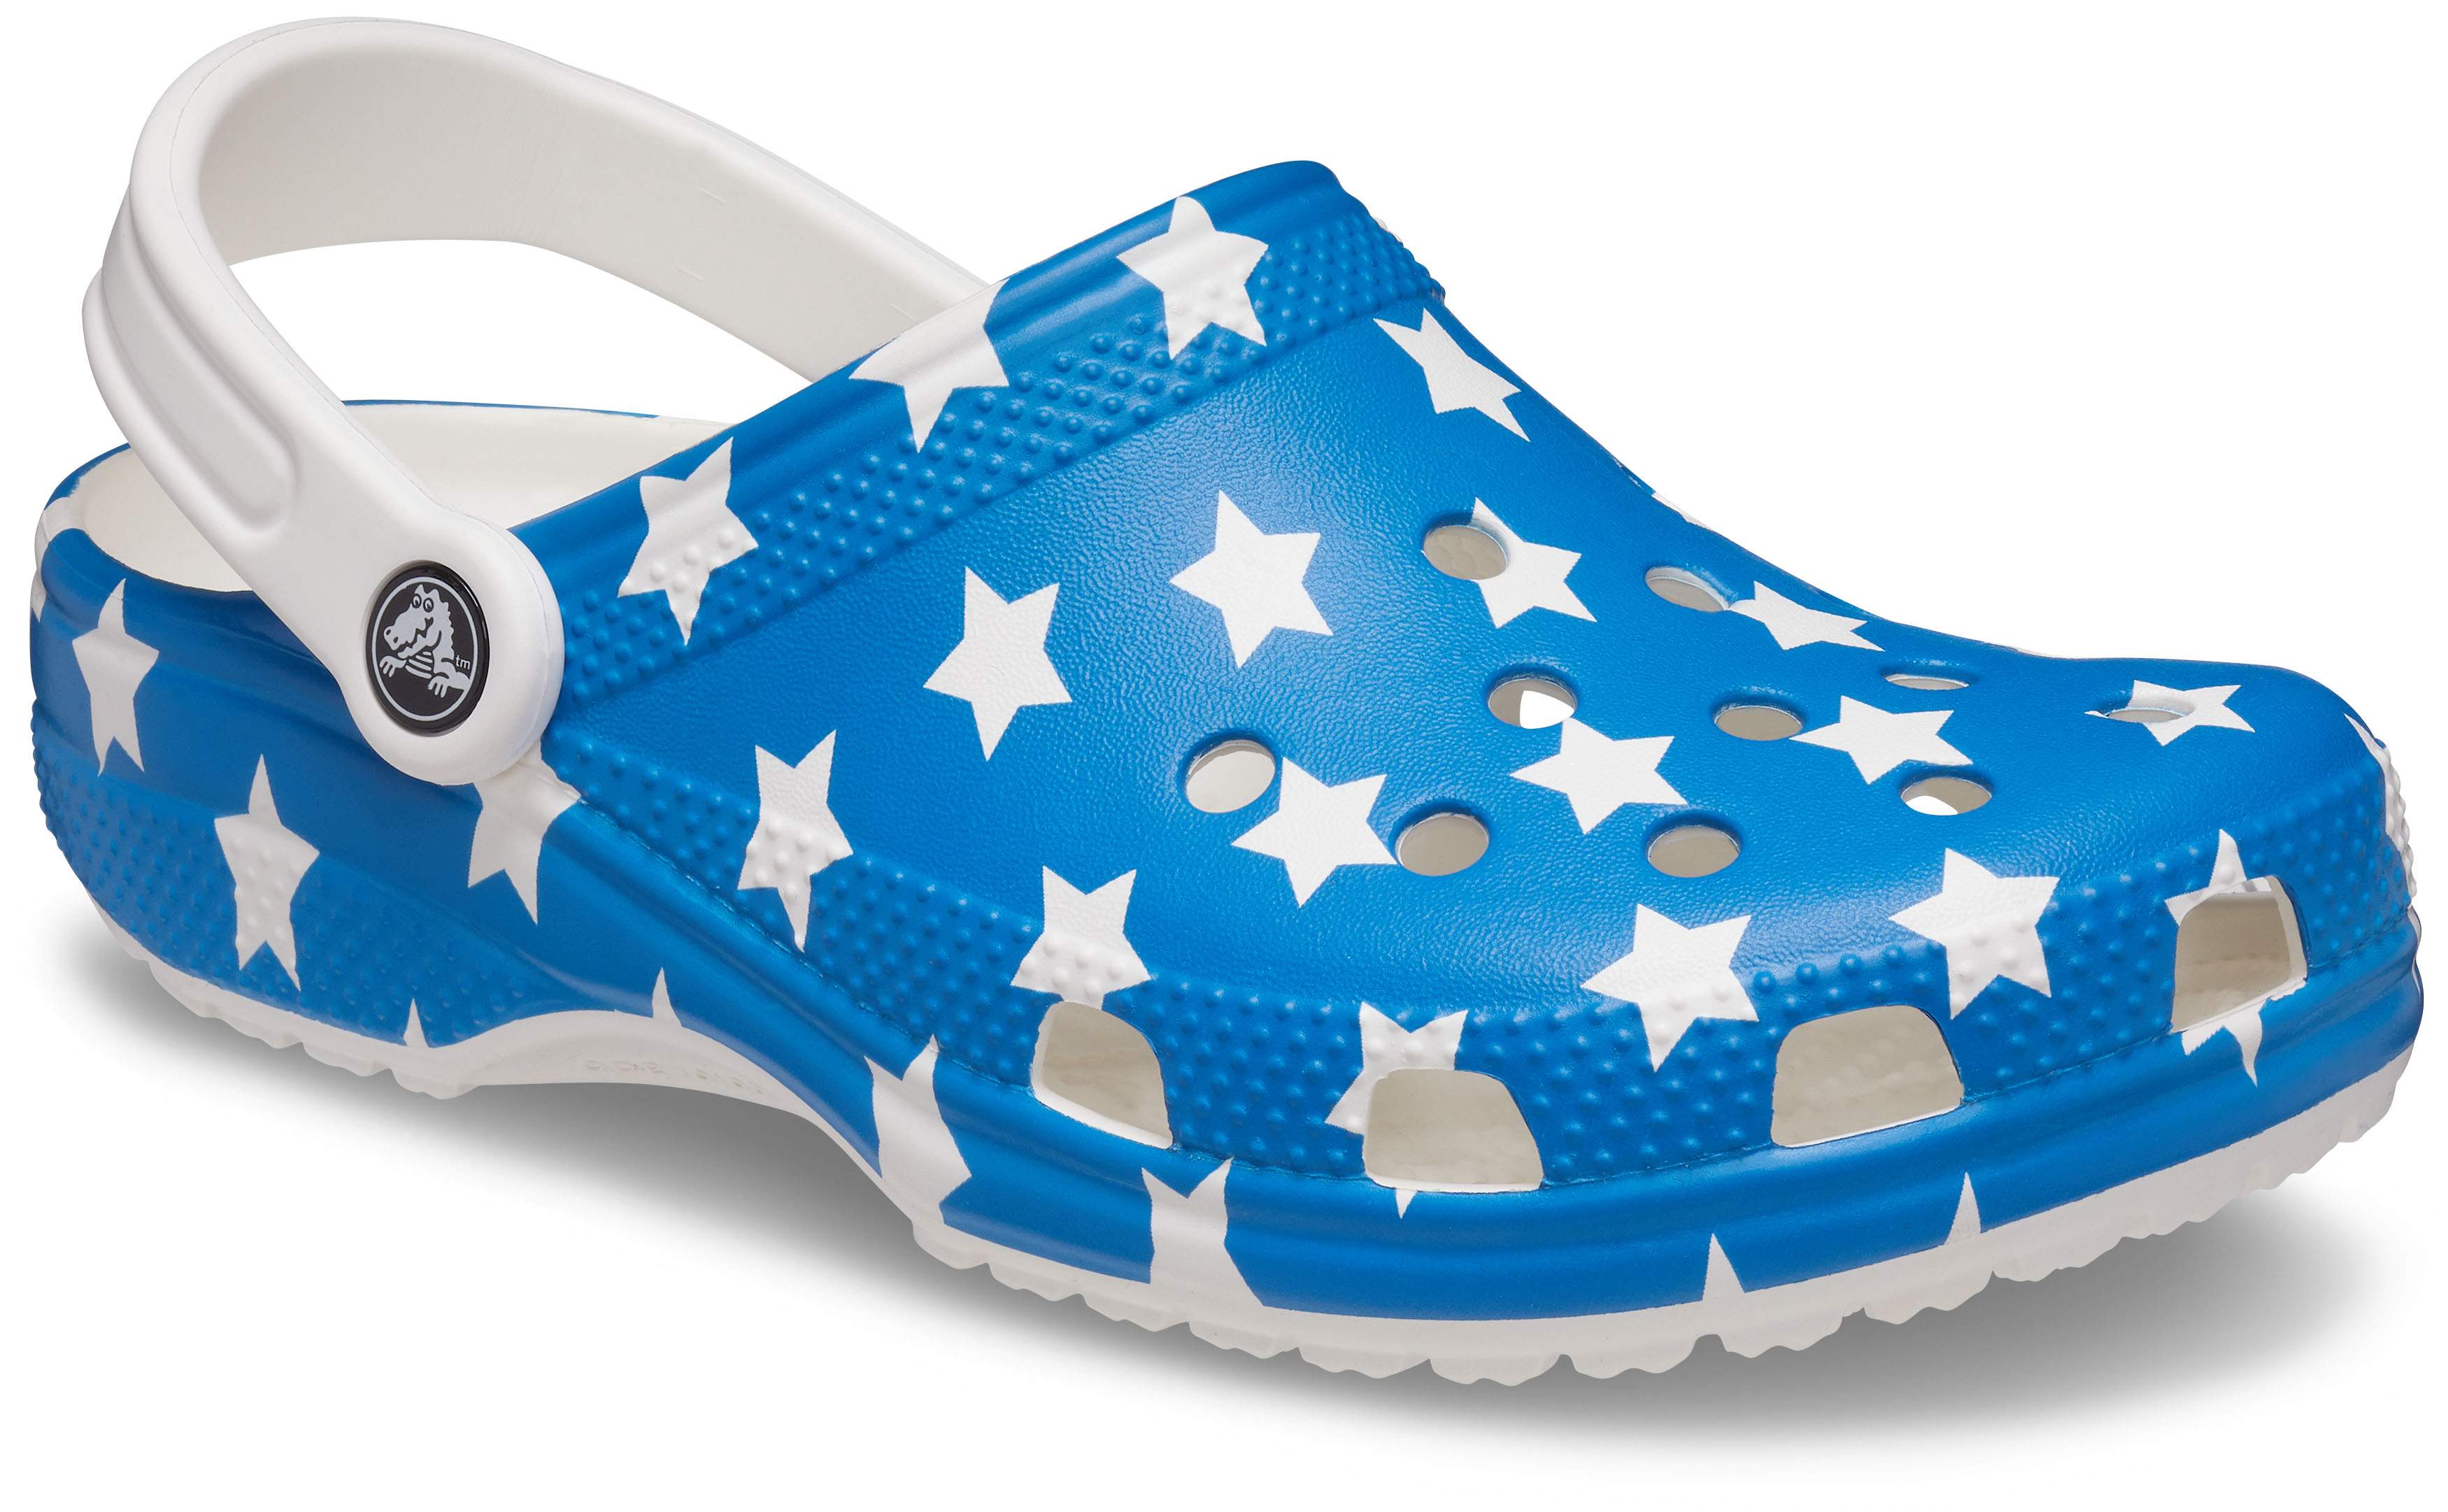 size 14 crocs shoes